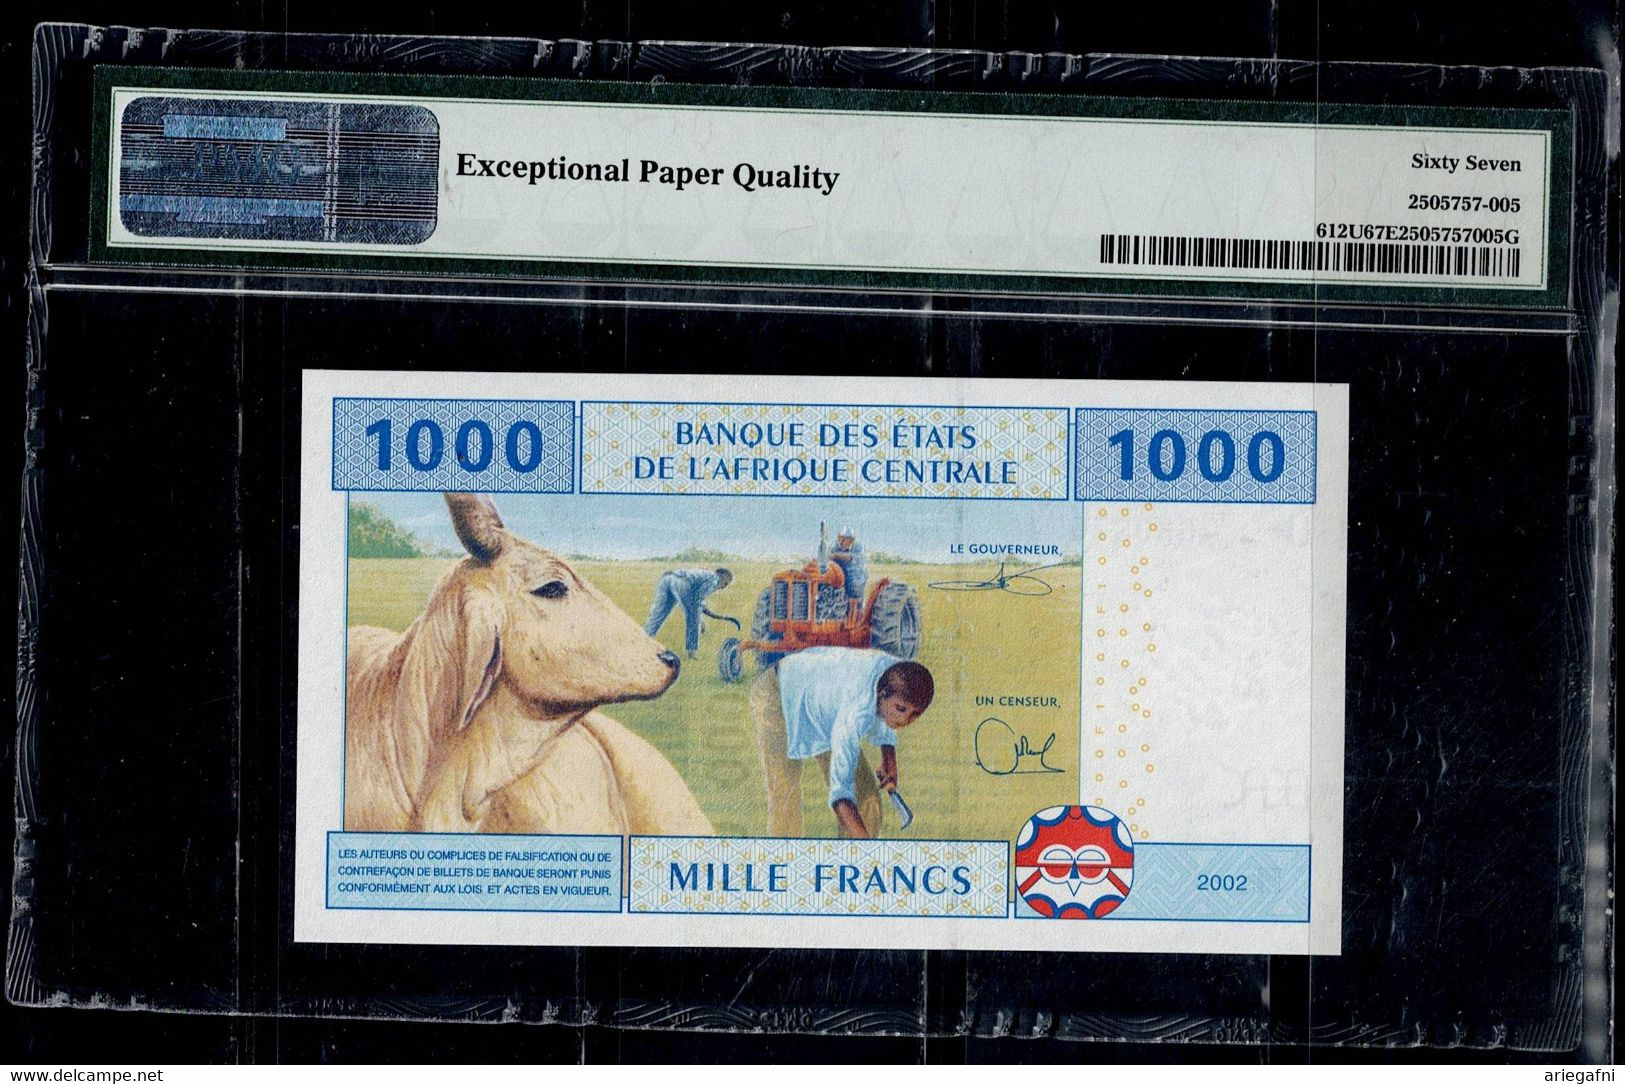 CAMEROON 2002 BANKNOT 1000 FRANCS PMG 67 UNC !! - Camerún